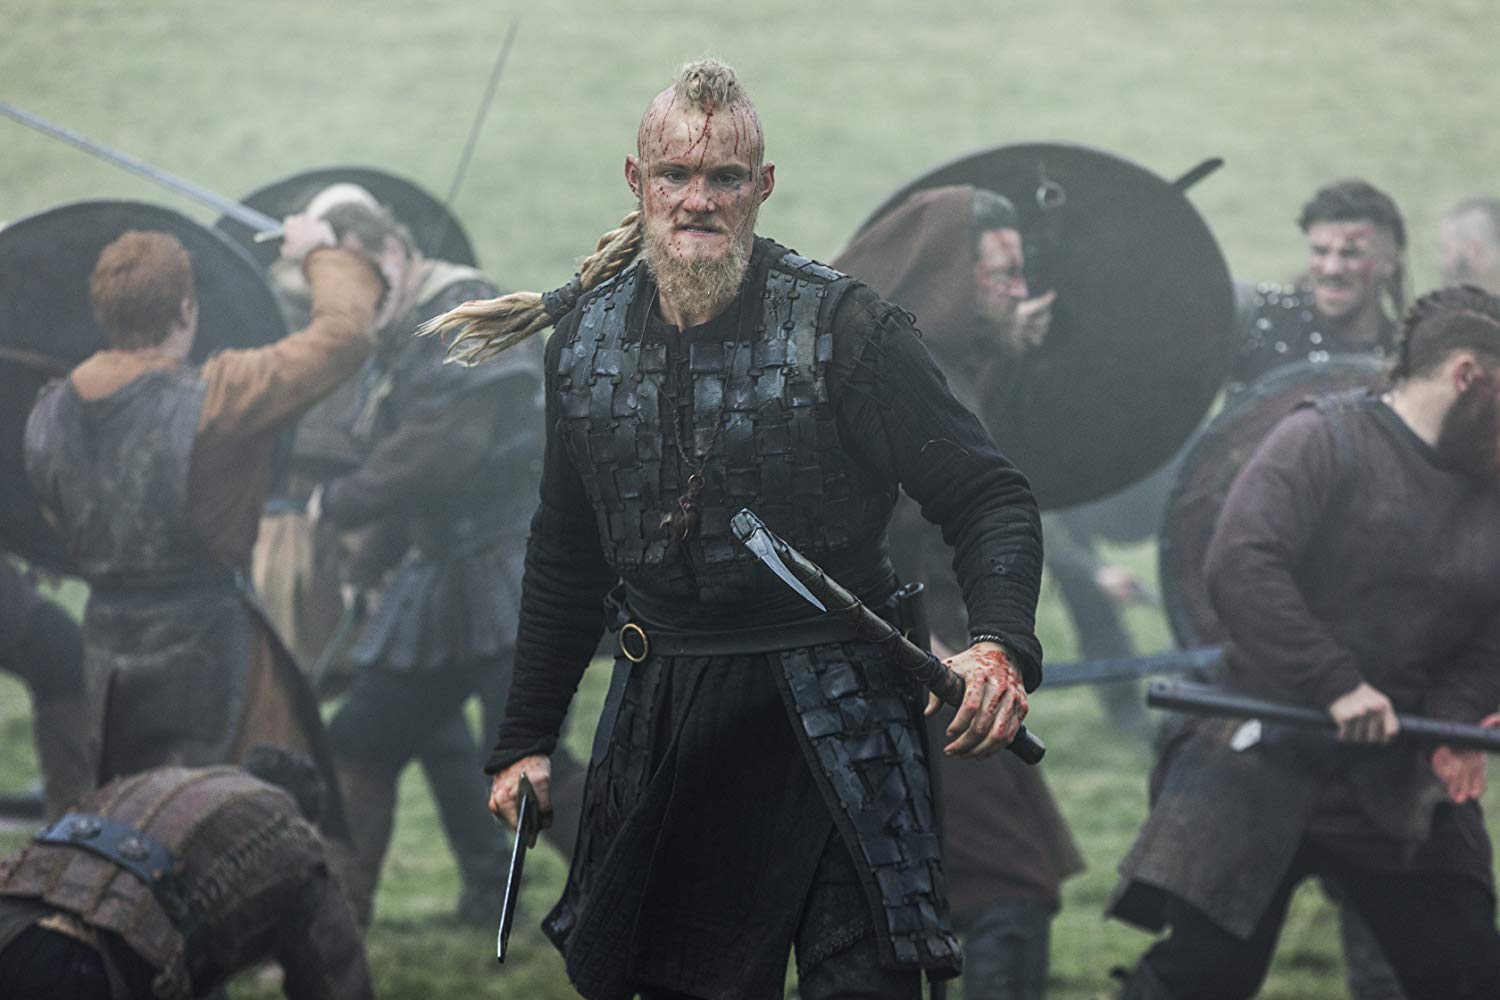 Bjorn Ironside sings country?' Vikings' Alexander Ludwig amazed by